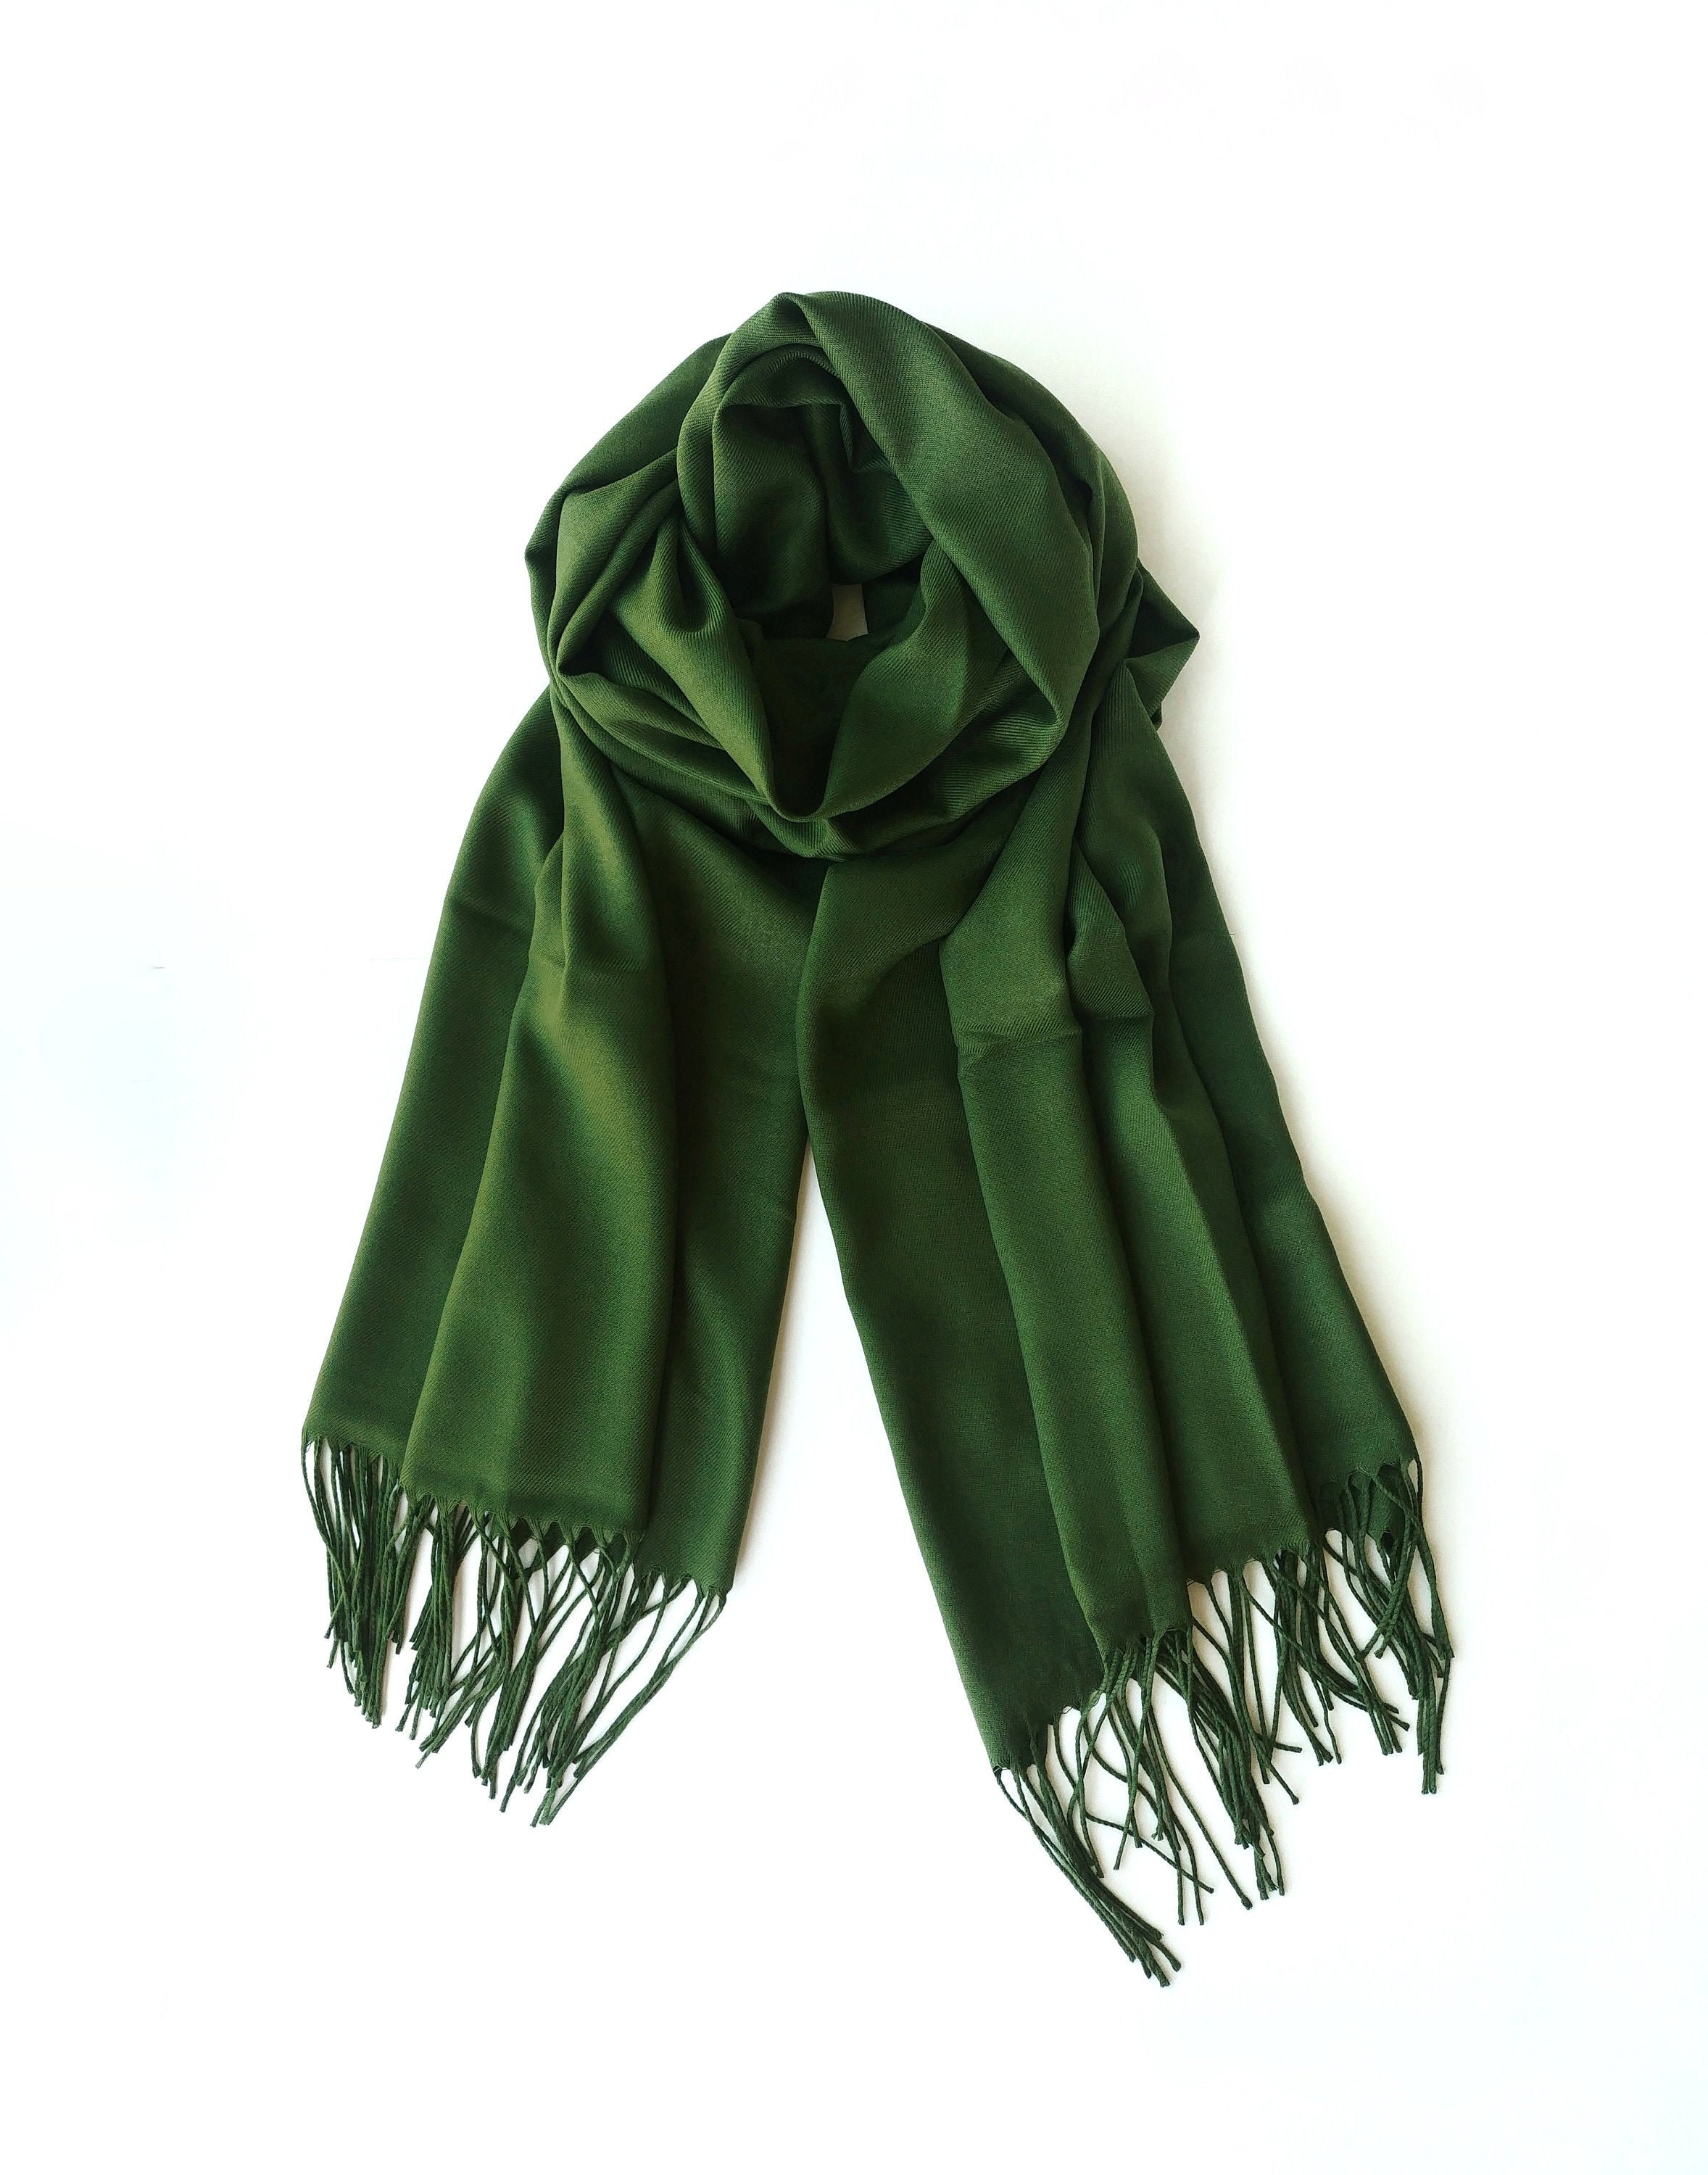 Шарф, зелёный. Платок зеленый. Салатовый шарф. Зеленый шарфик.